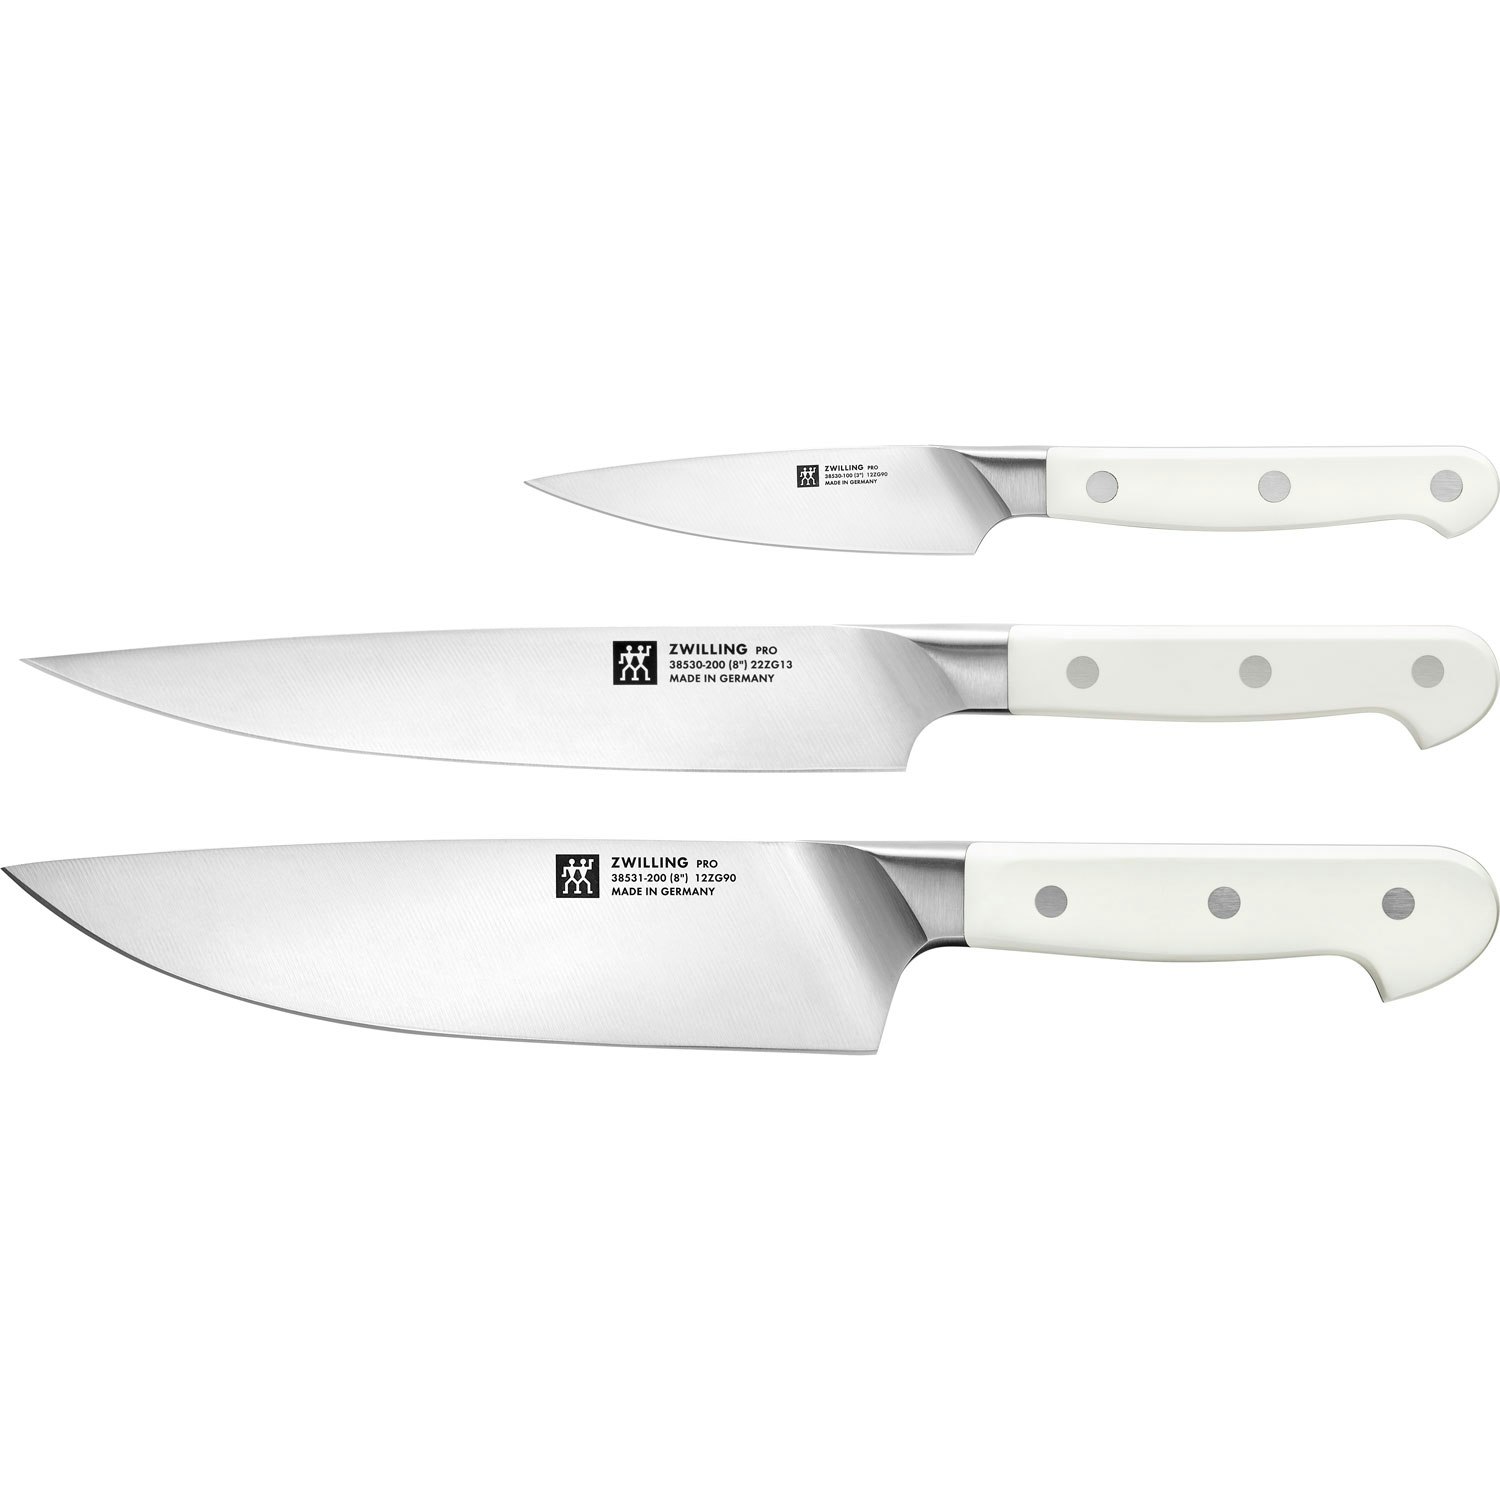 https://royaldesign.com/image/2/zwilling-pro-le-blanc-knife-set-3-pieces-0